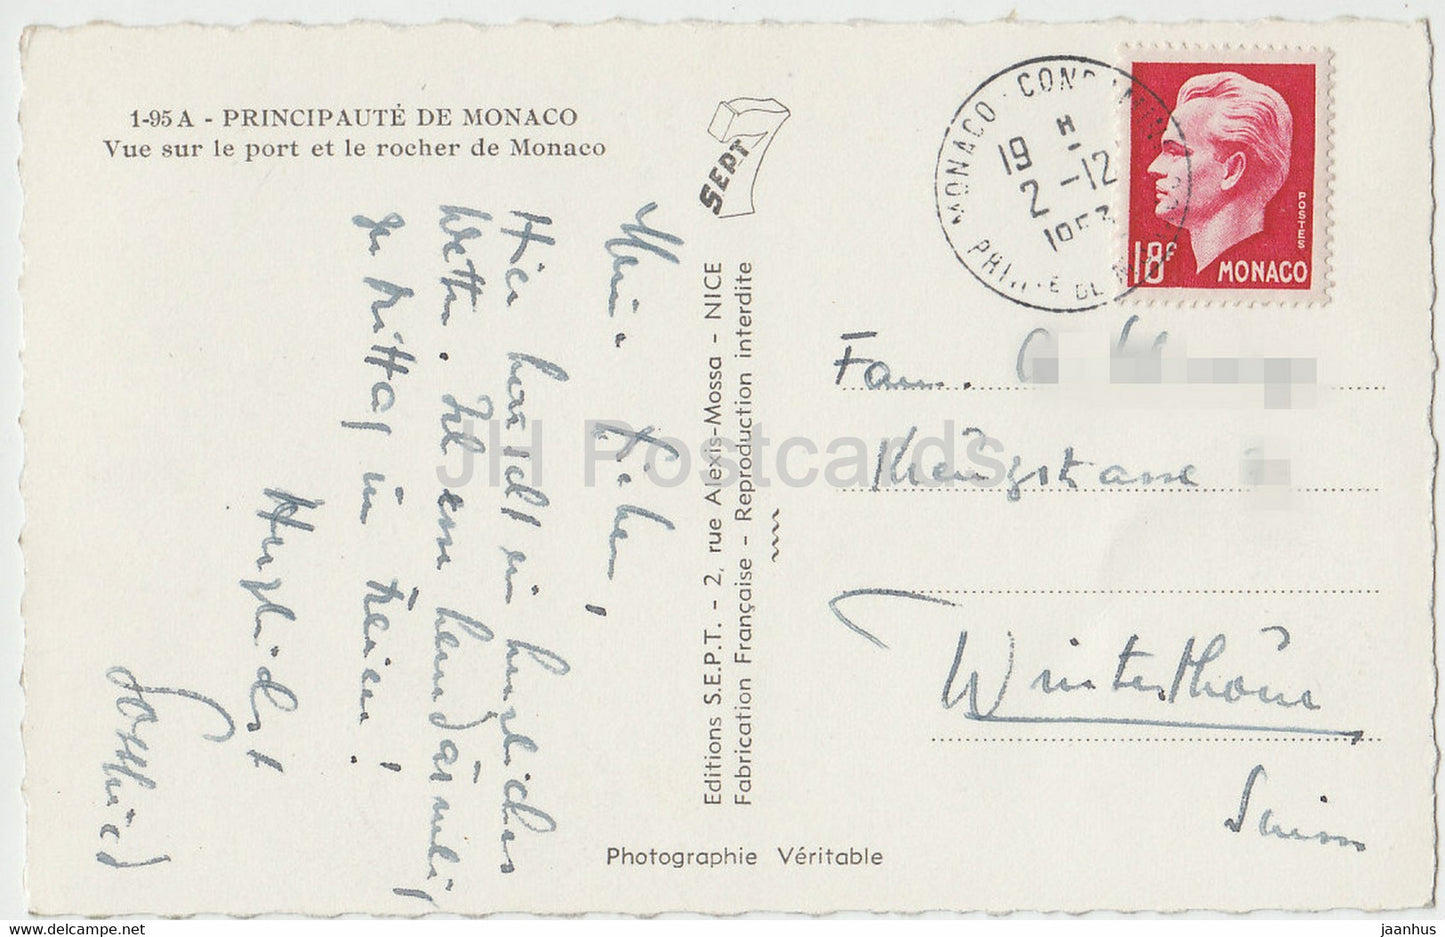 Vue sur le port et le rocher de Monaco - carte postale ancienne - 1953 - Monaco - occasion